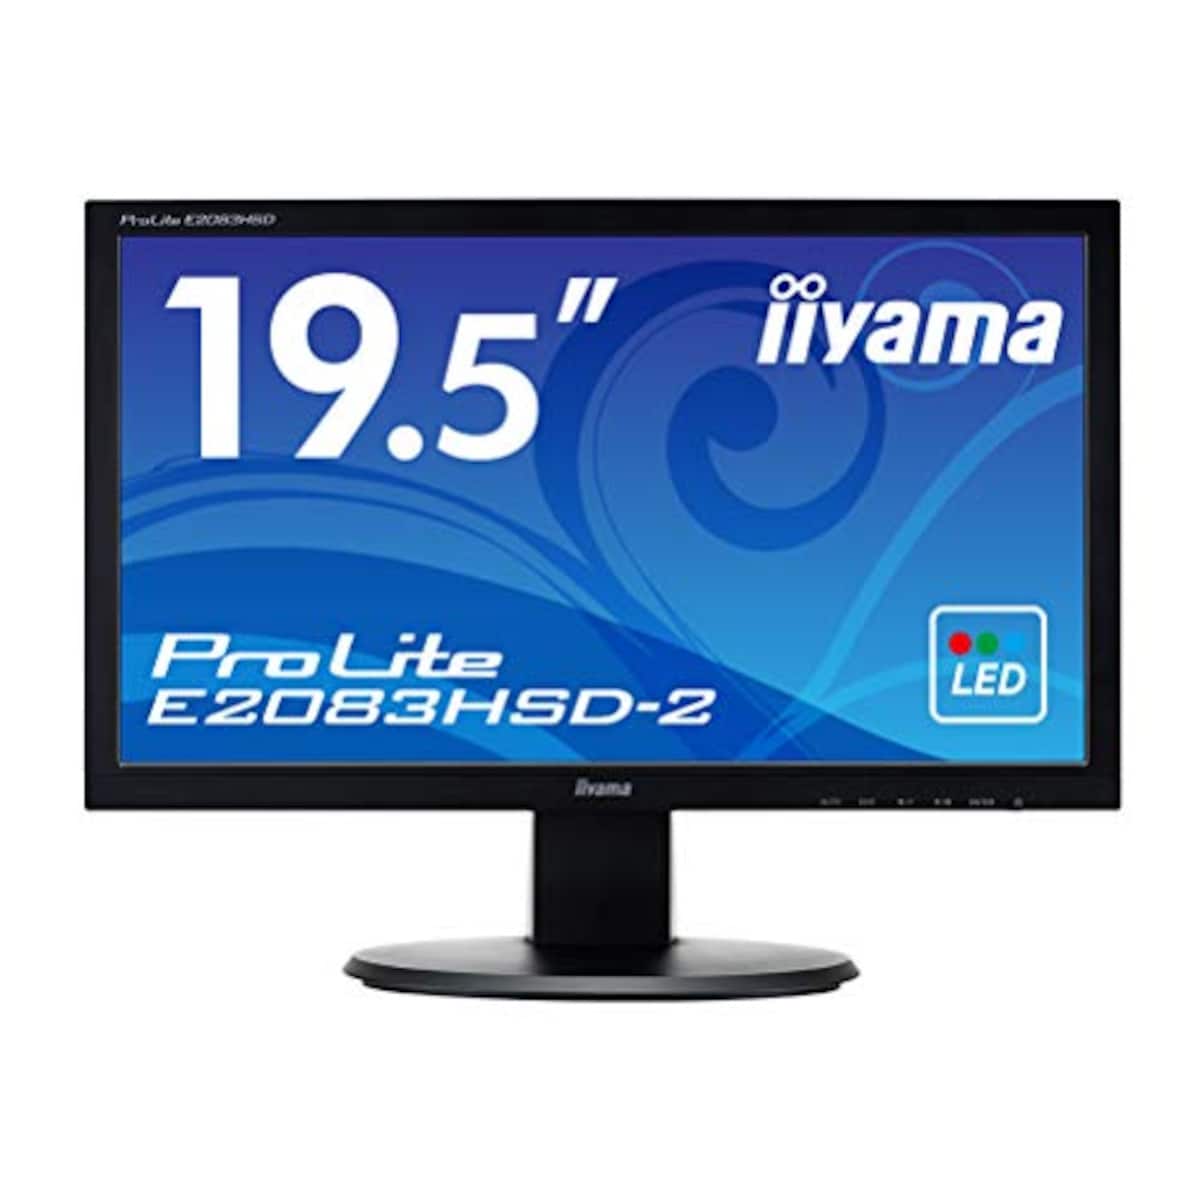 iiyama モニター ディスプレイ E2083HSD-B2 (19.5インチ/HD+/TN/D-sub,DVI-D/3年保証)